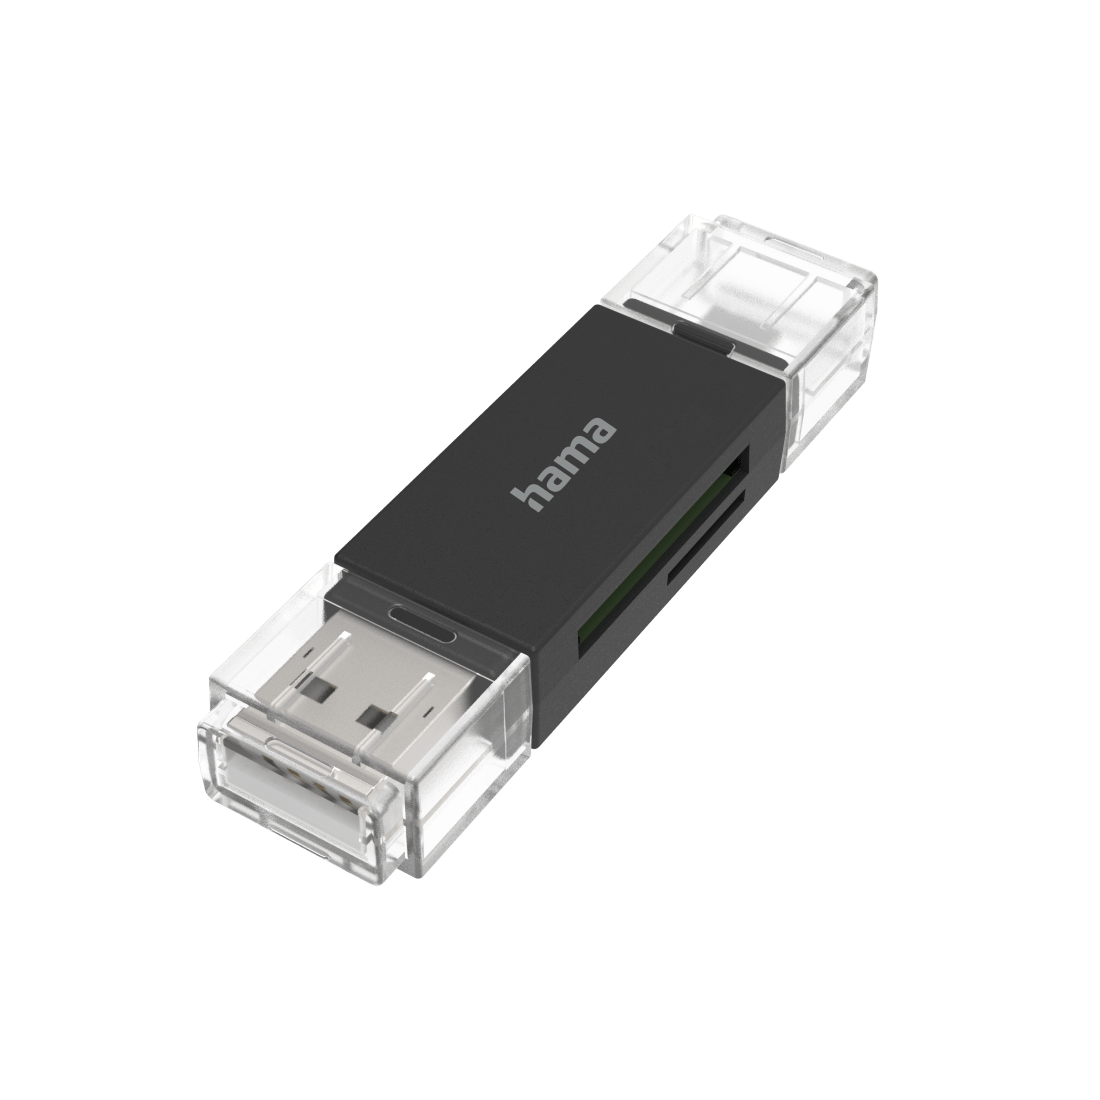 USB-kaartlezer OTG USB-A + micro-USB USB 2.0 SD/microSD